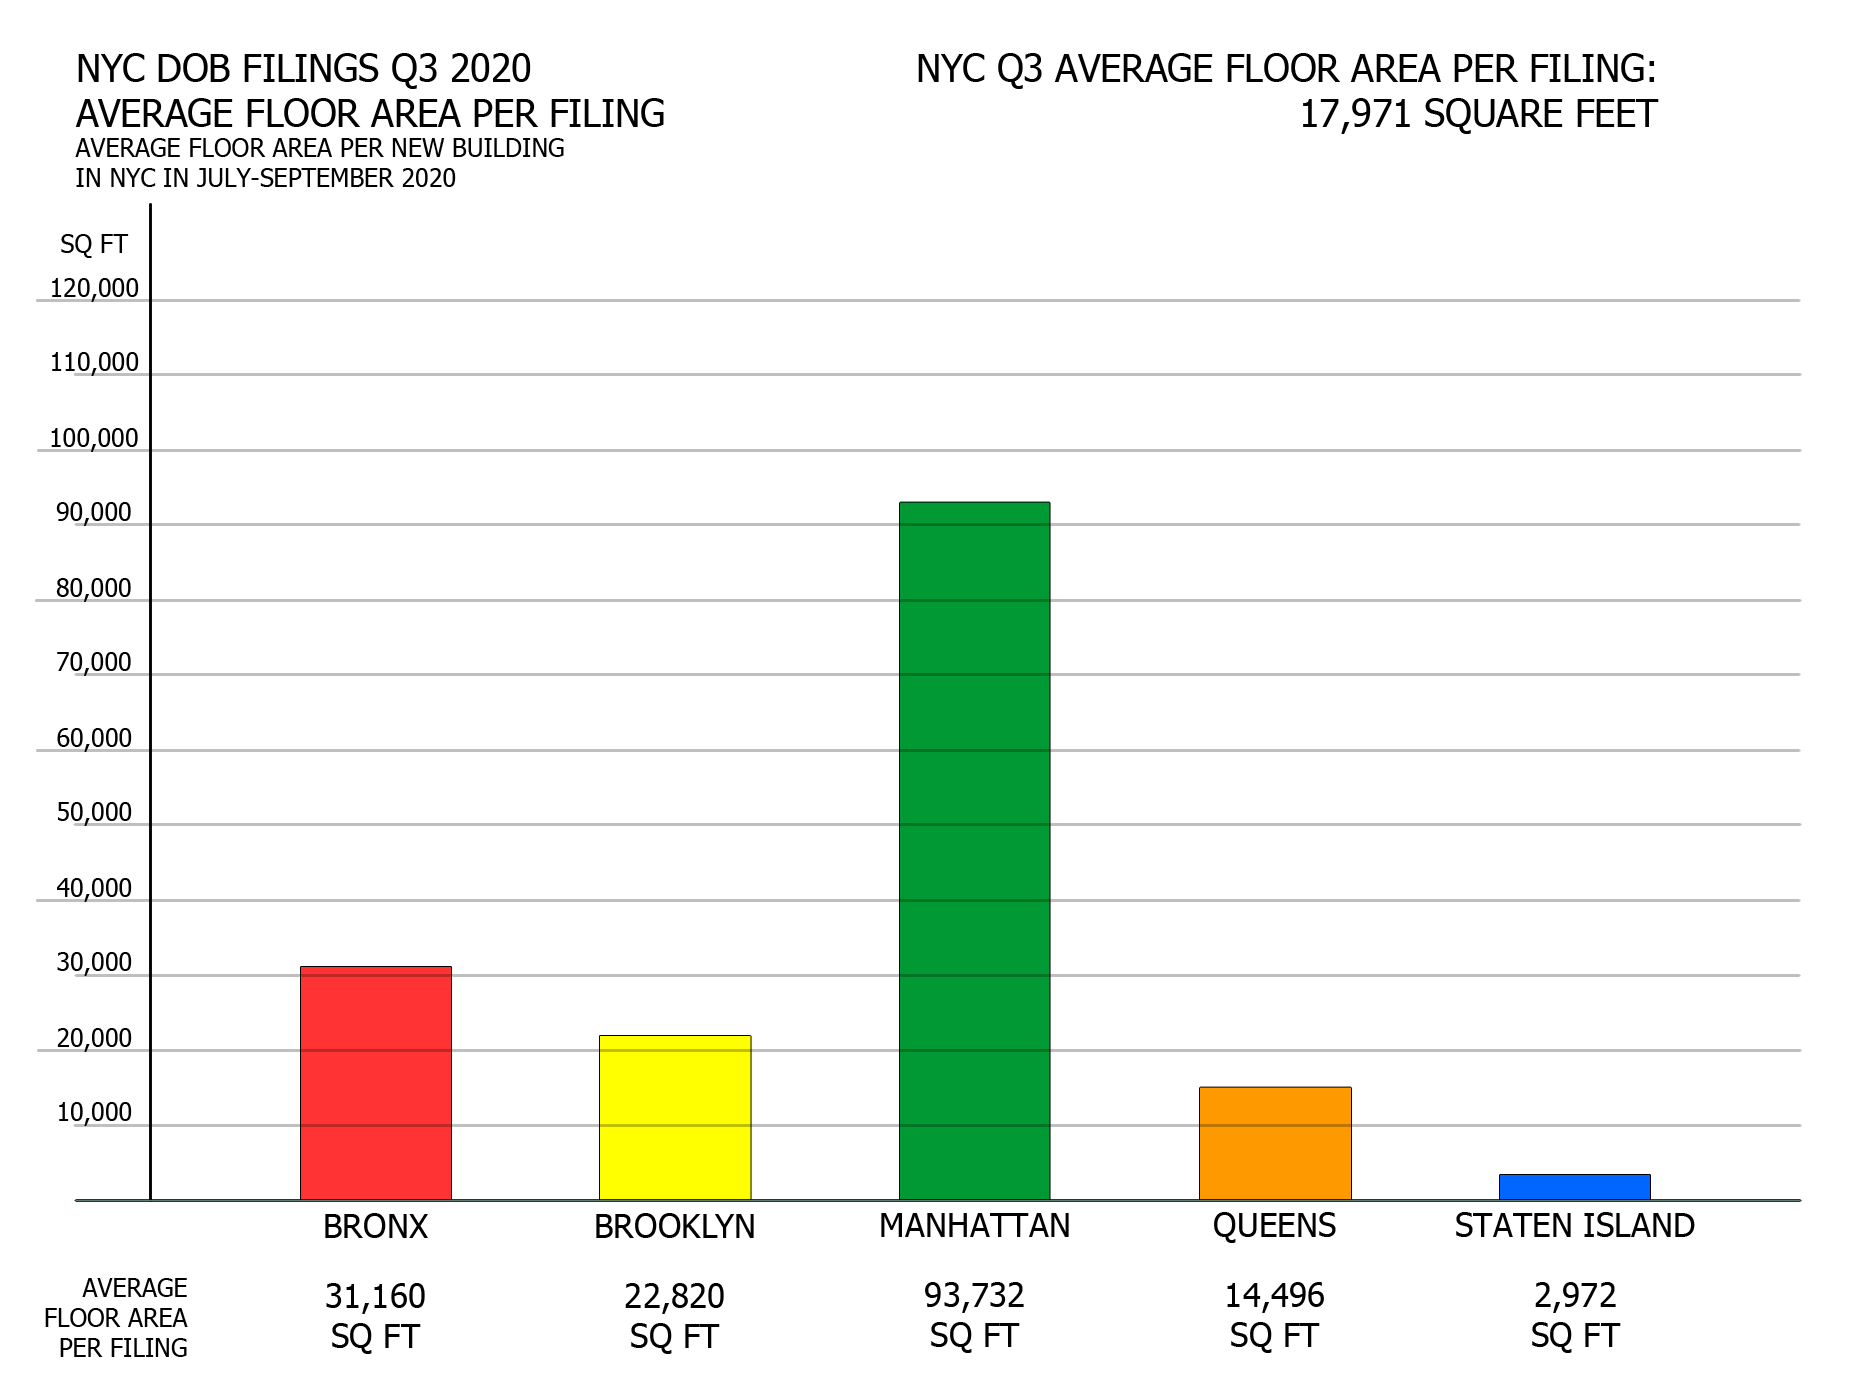 NYC DOB filings in Q3 2020 by average floor area. Credit: Vitali Ogorodnikov